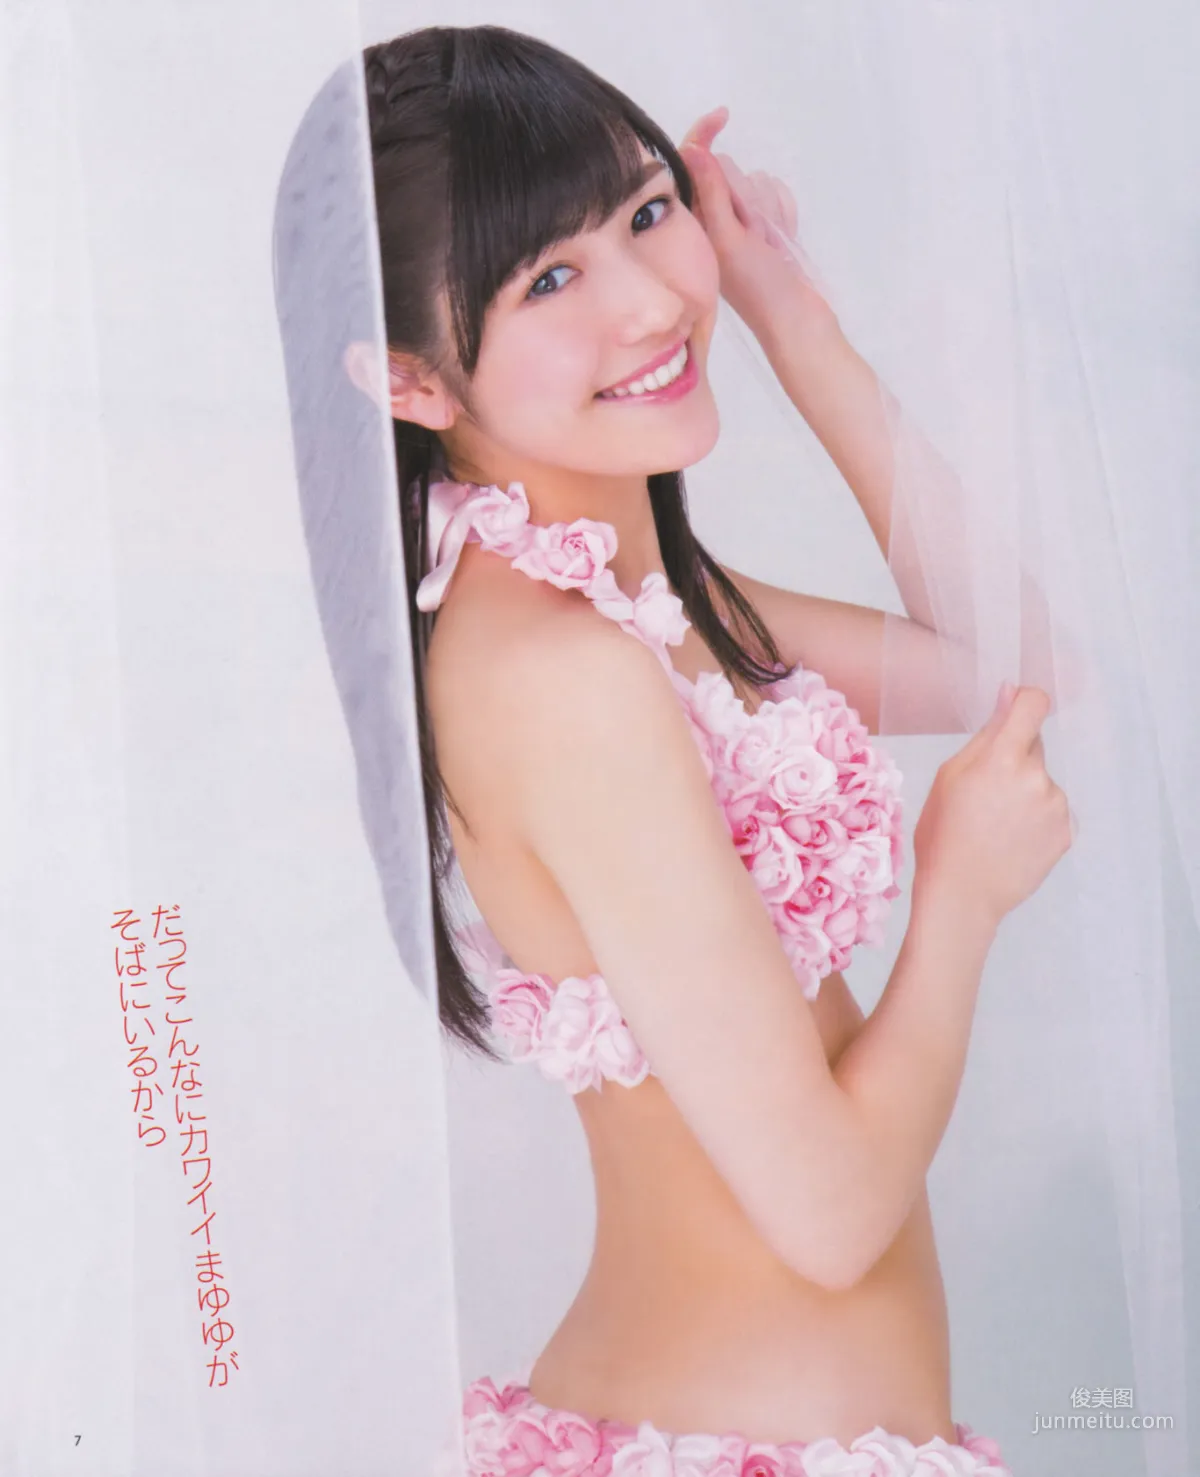 [Bomb Magazine] 2013年No.03 渡边麻友 秋元才加 AKB48 写真杂志7